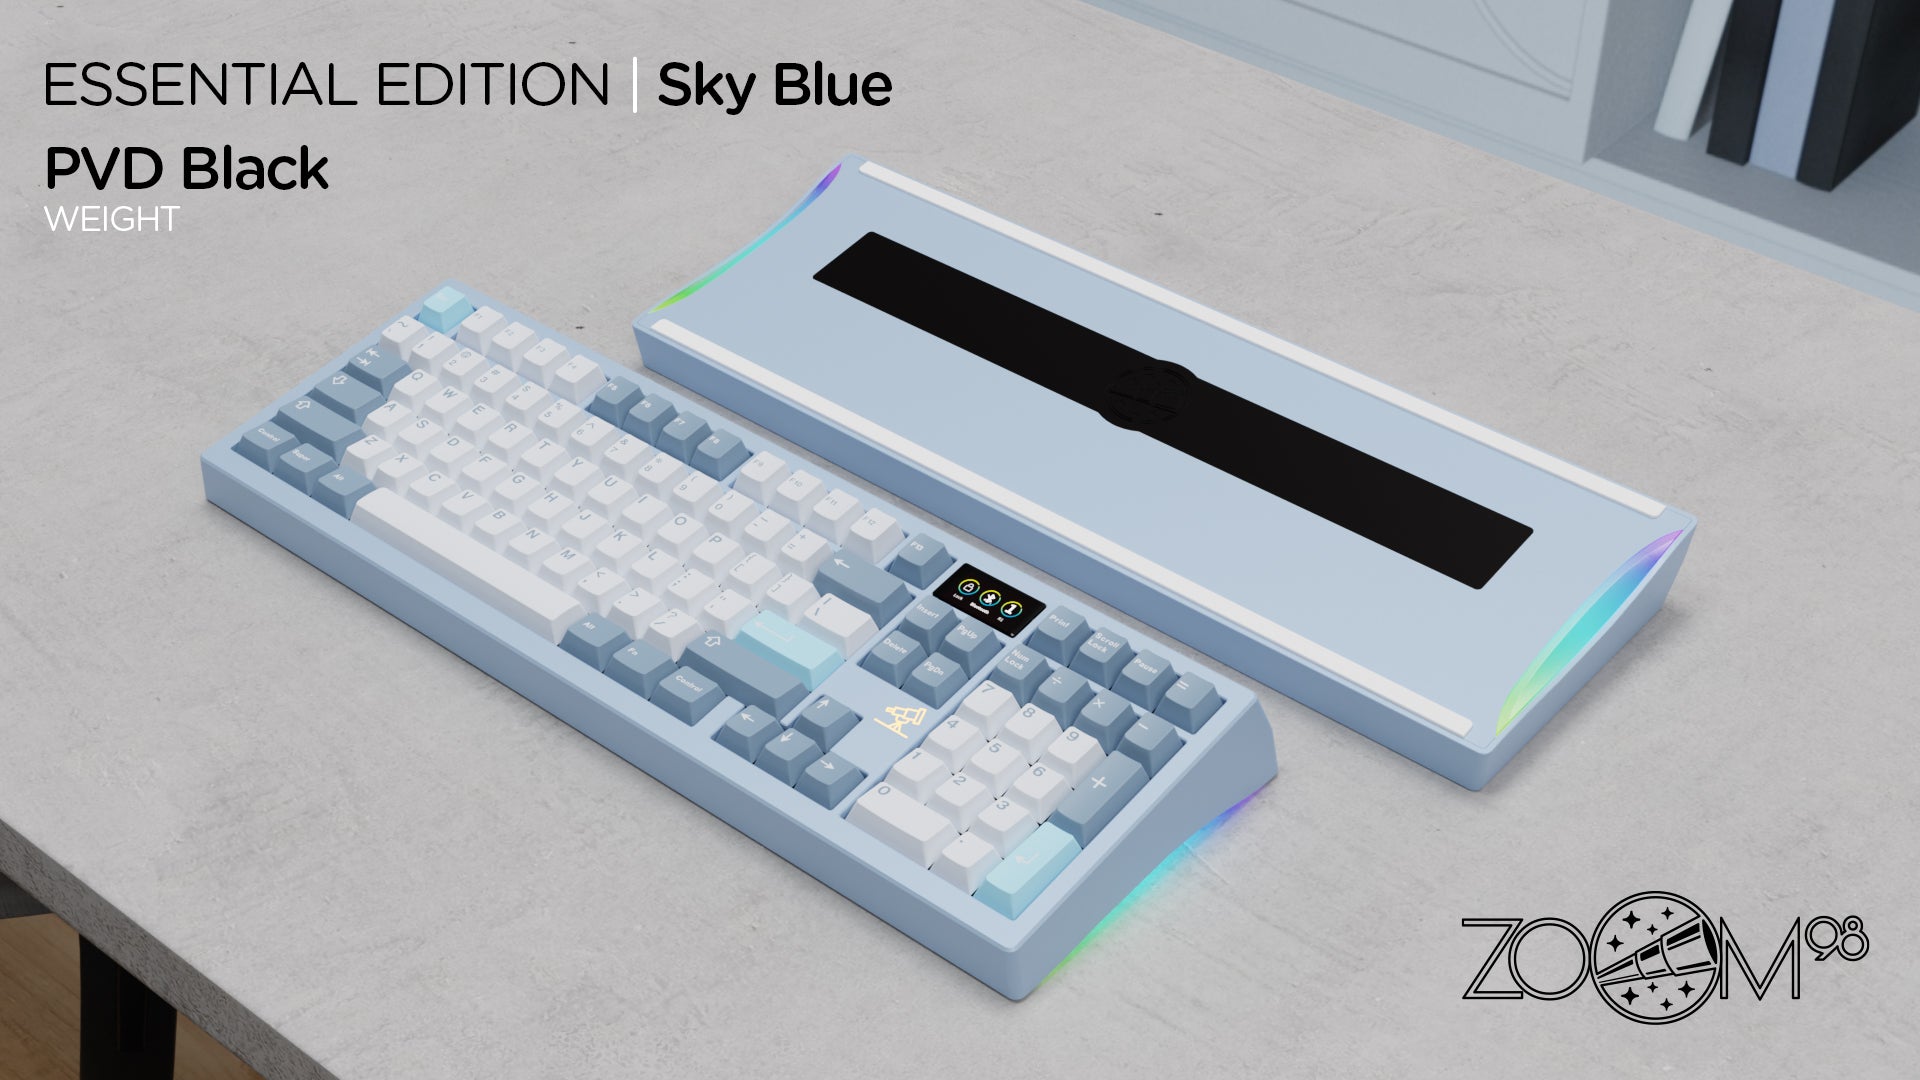 Zoom98 EE Sky Blue